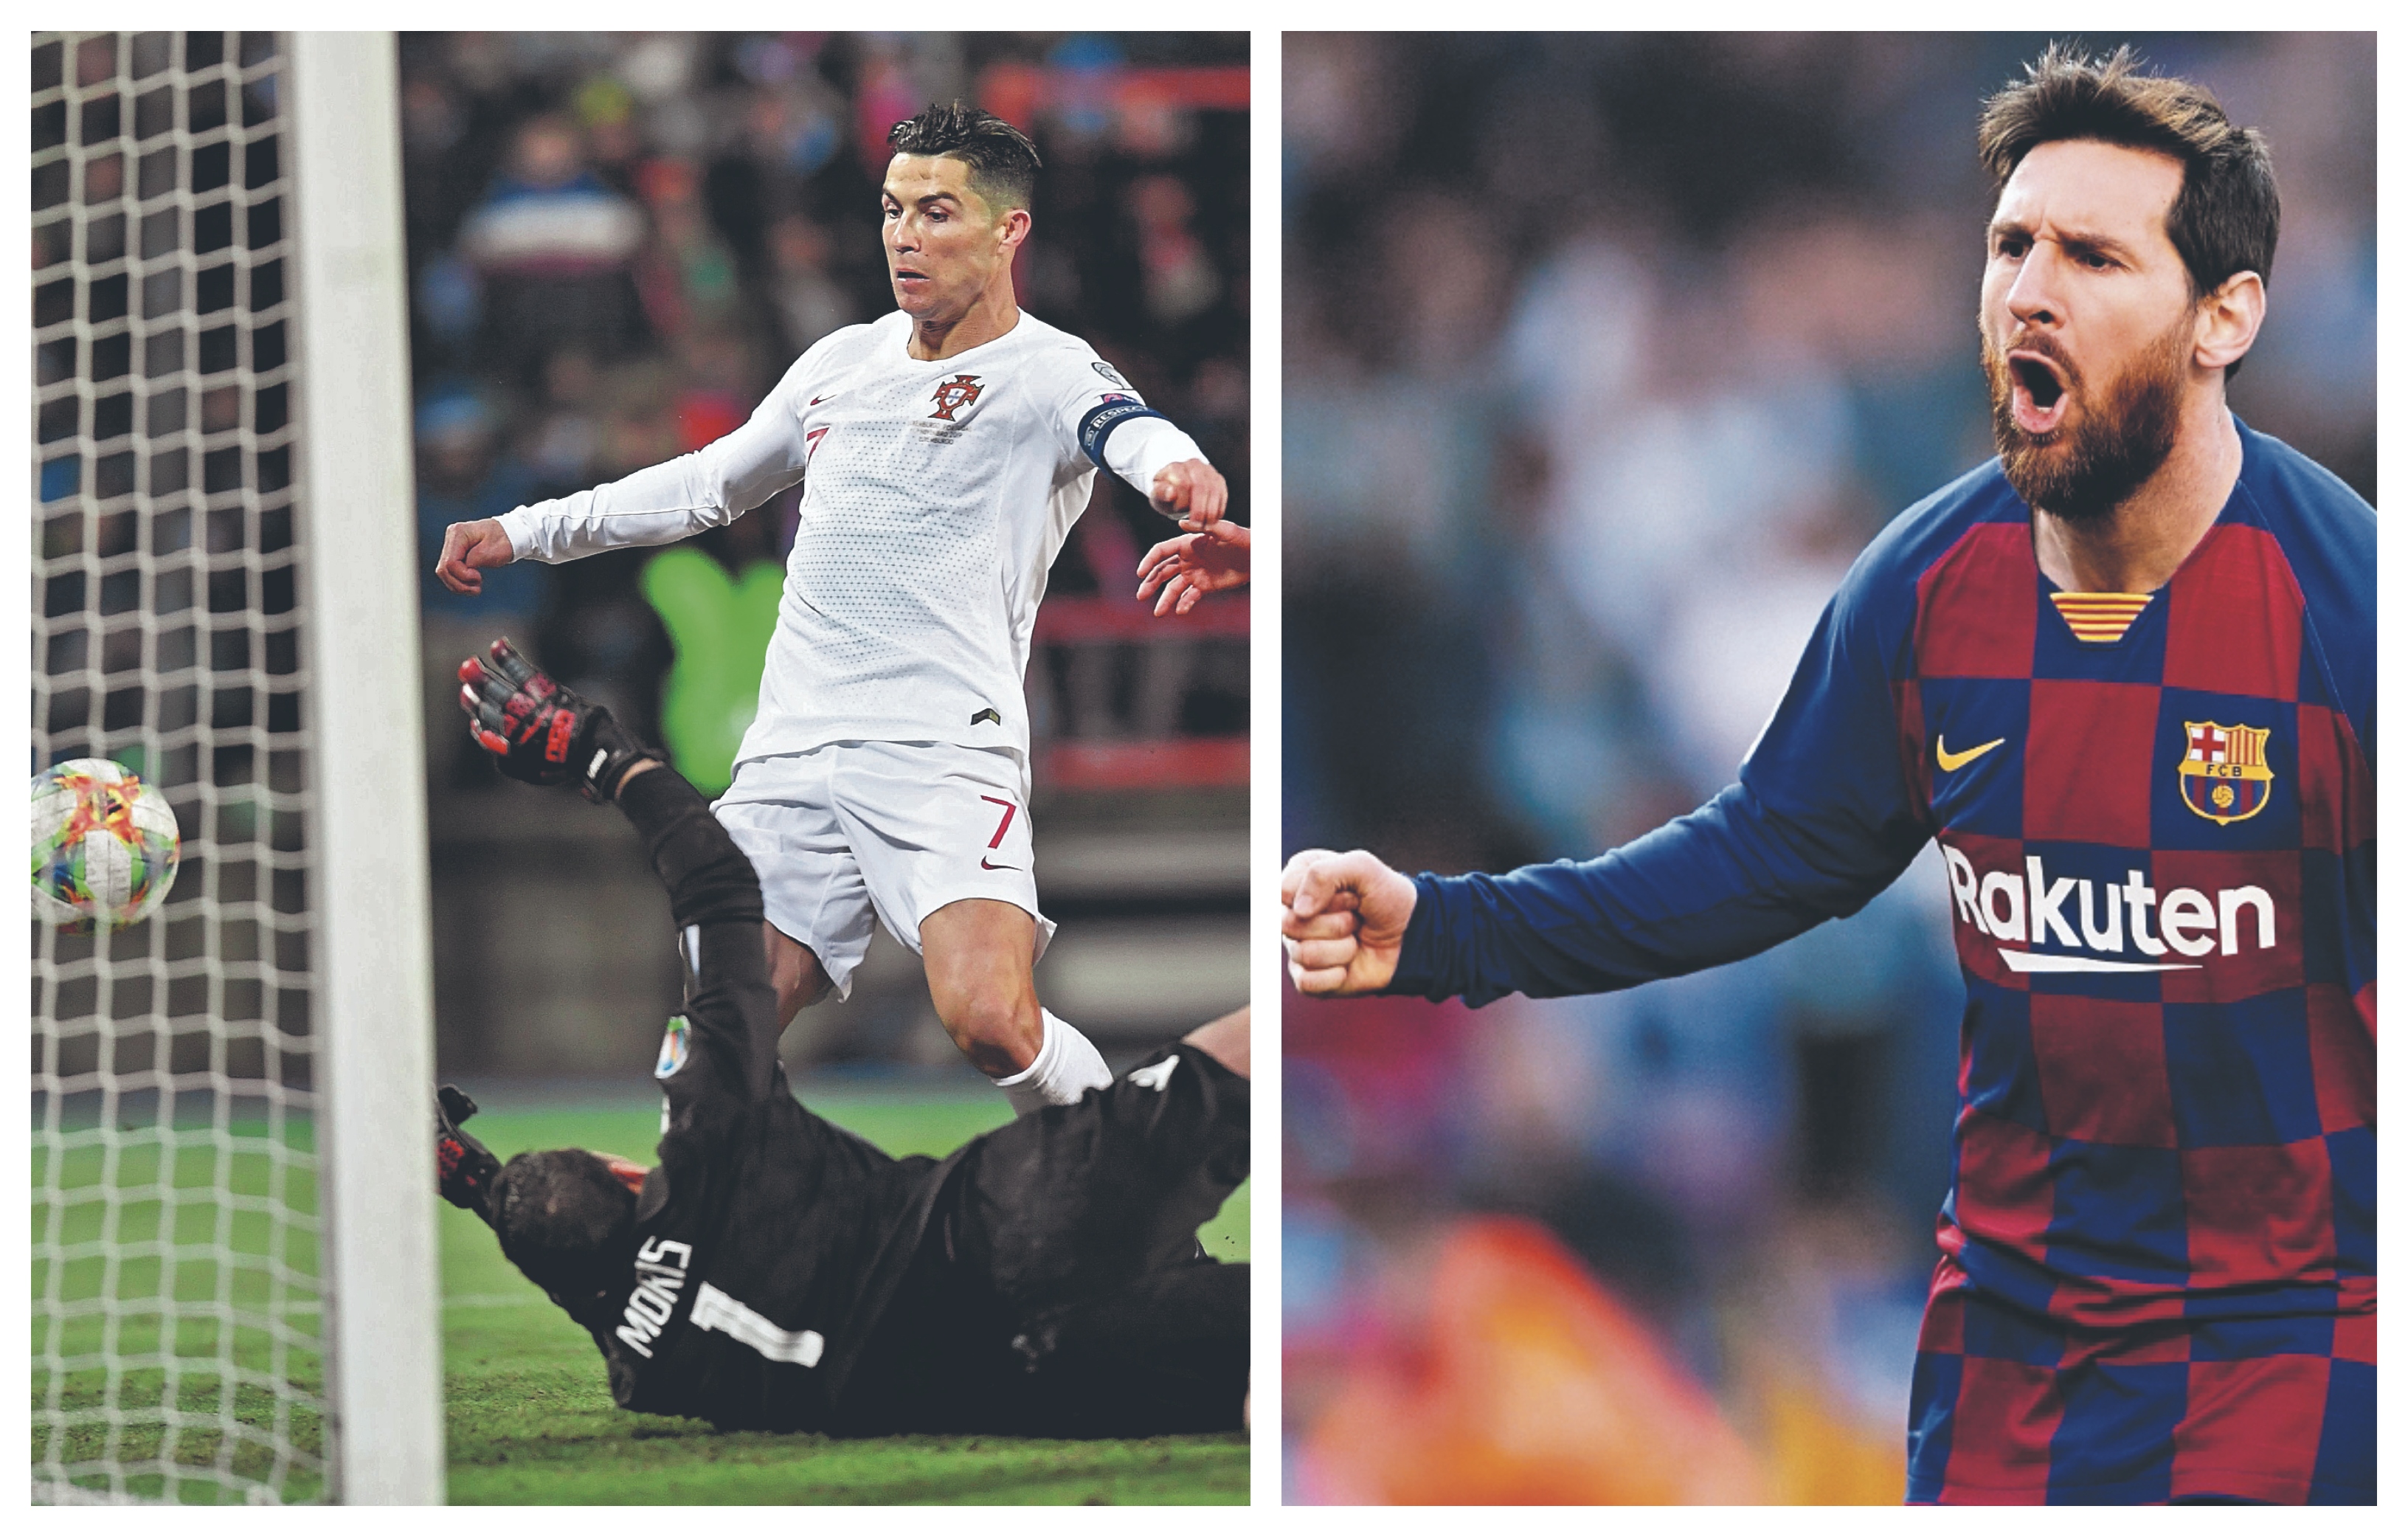 Cristiano Ronaldo y Lionel Messi, las máximas figuras del futbol mundial en la actualidad. (Foto Prensa Libre: Hemeroteca PL)